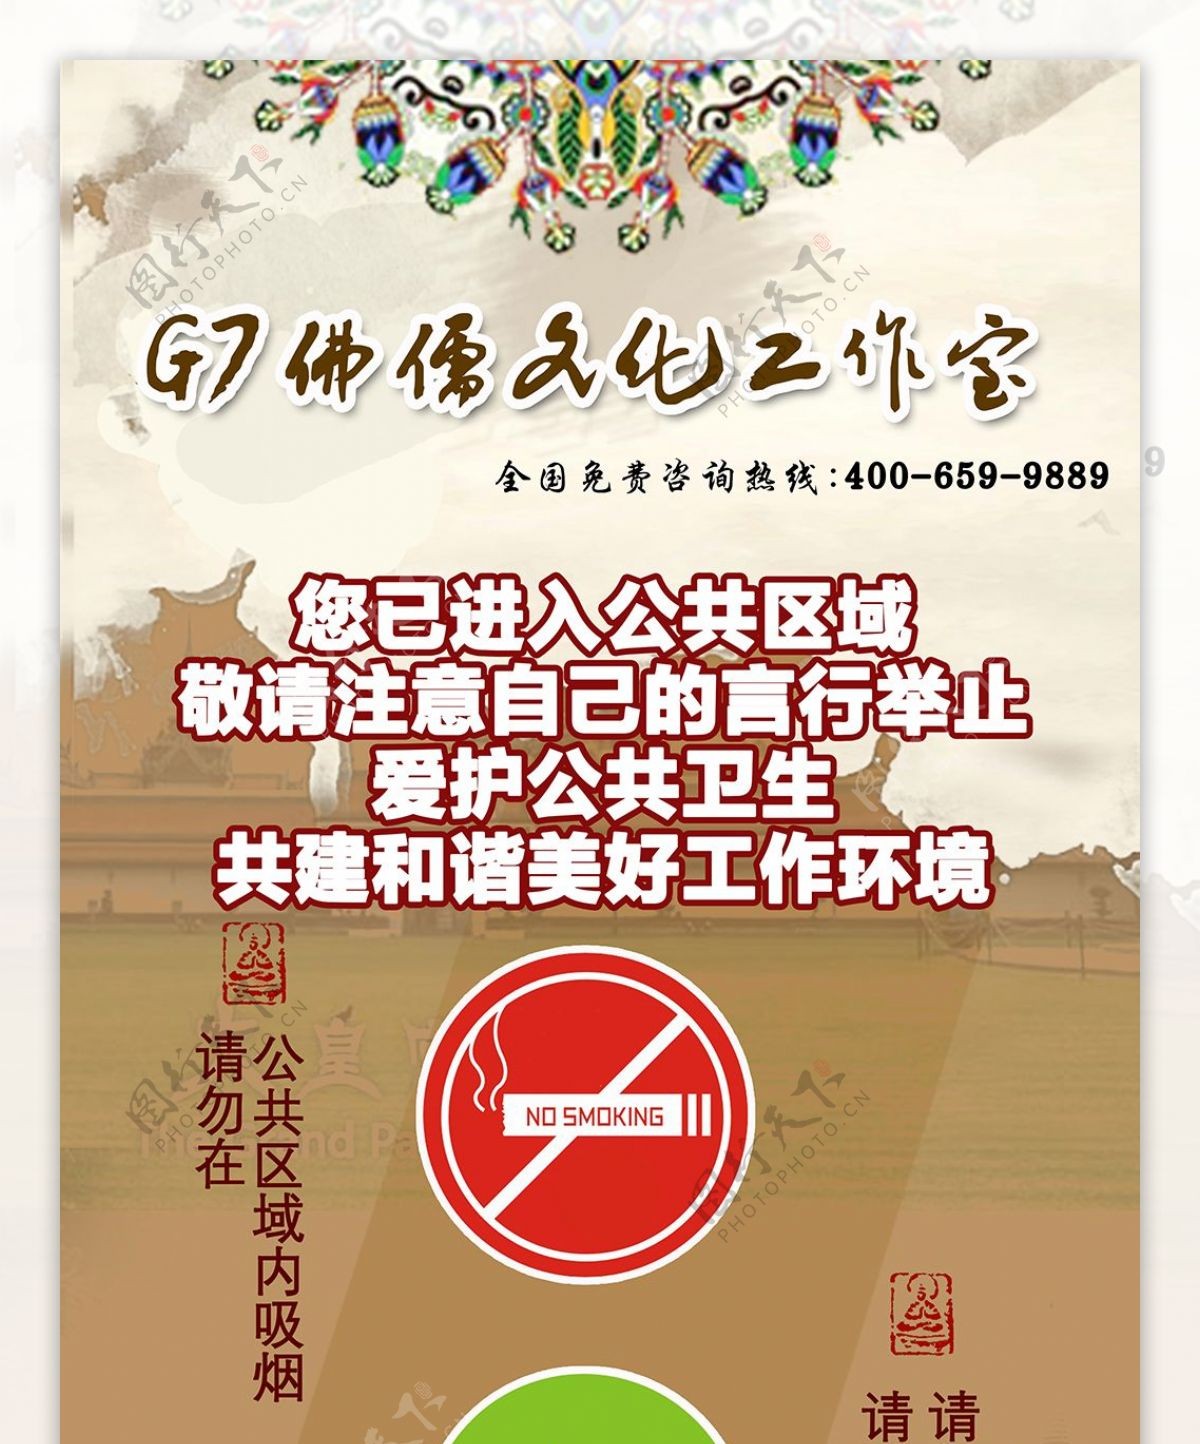 泰国佛文化易拉宝禁止抽烟请勿大声喧哗